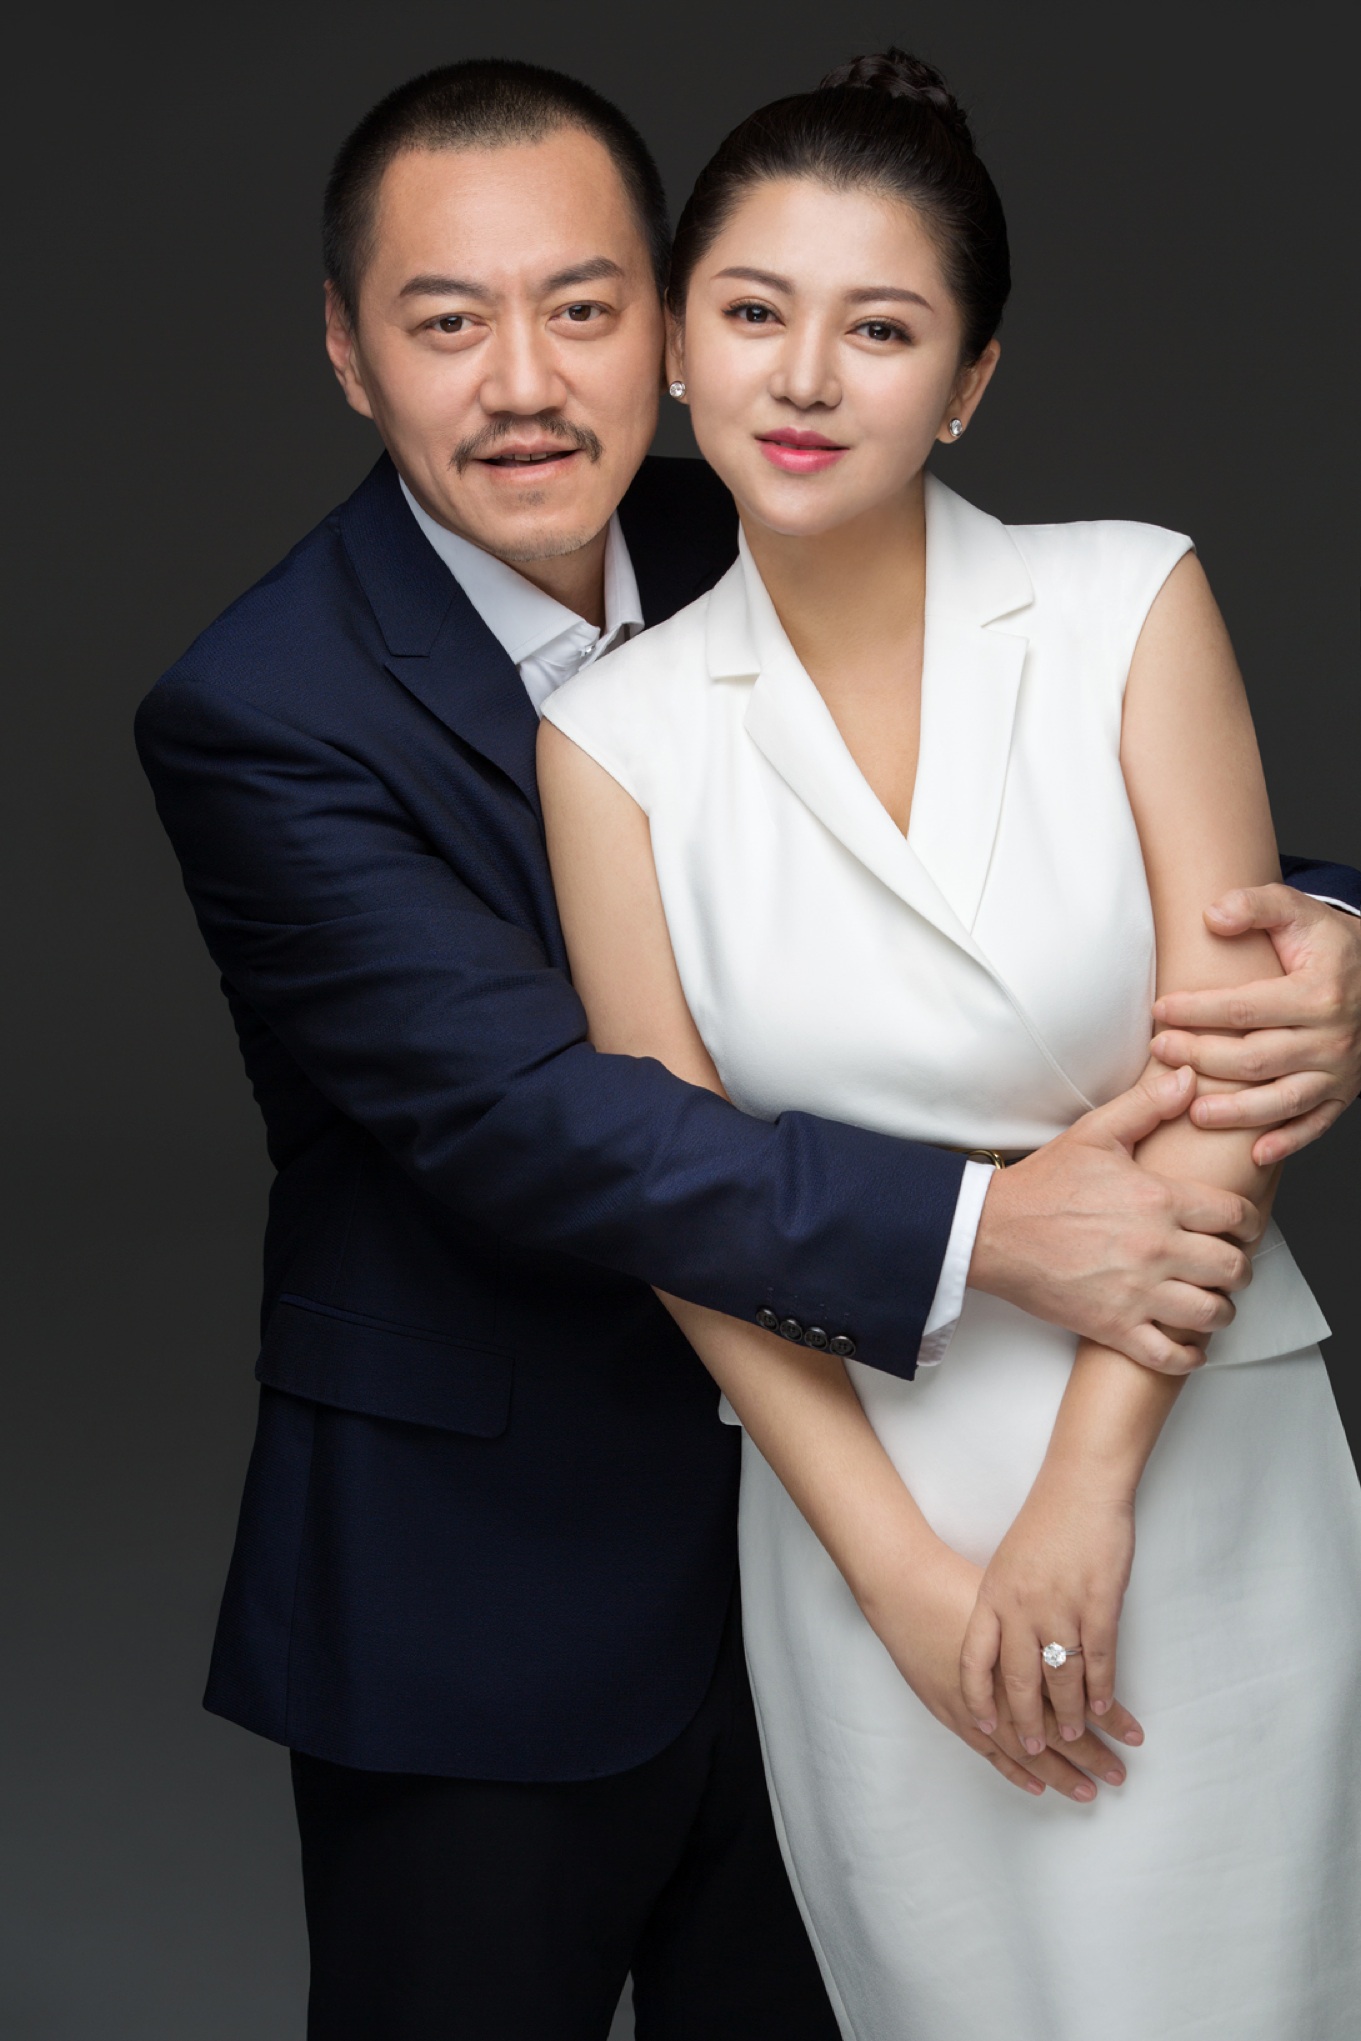 雪村俞晴结婚图片